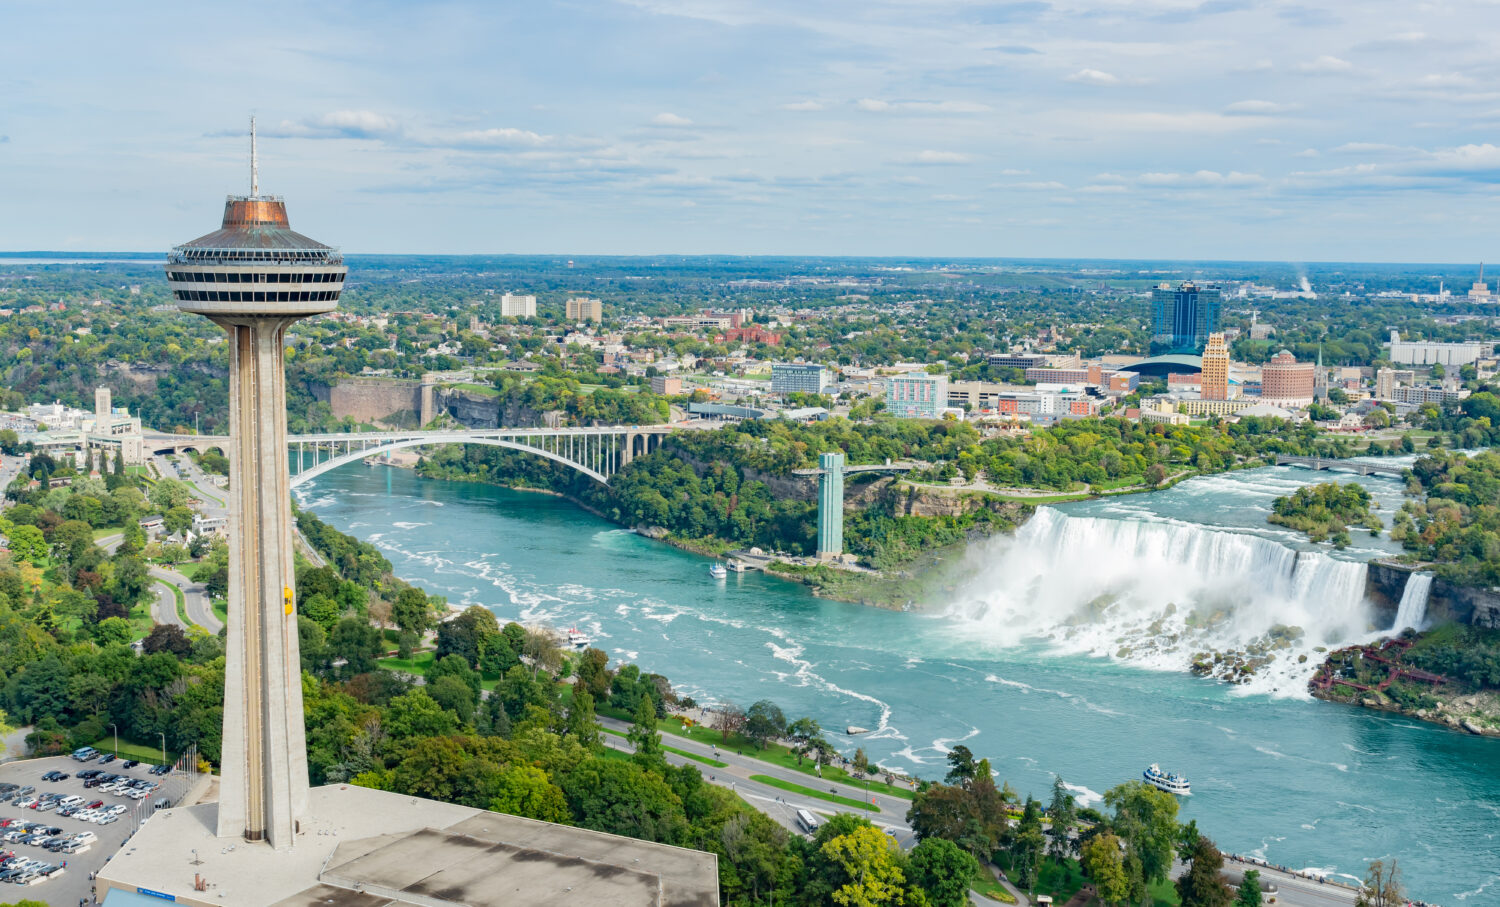 Vista aerea della Skylon Tower e delle bellissime Cascate del Niagara in Canada